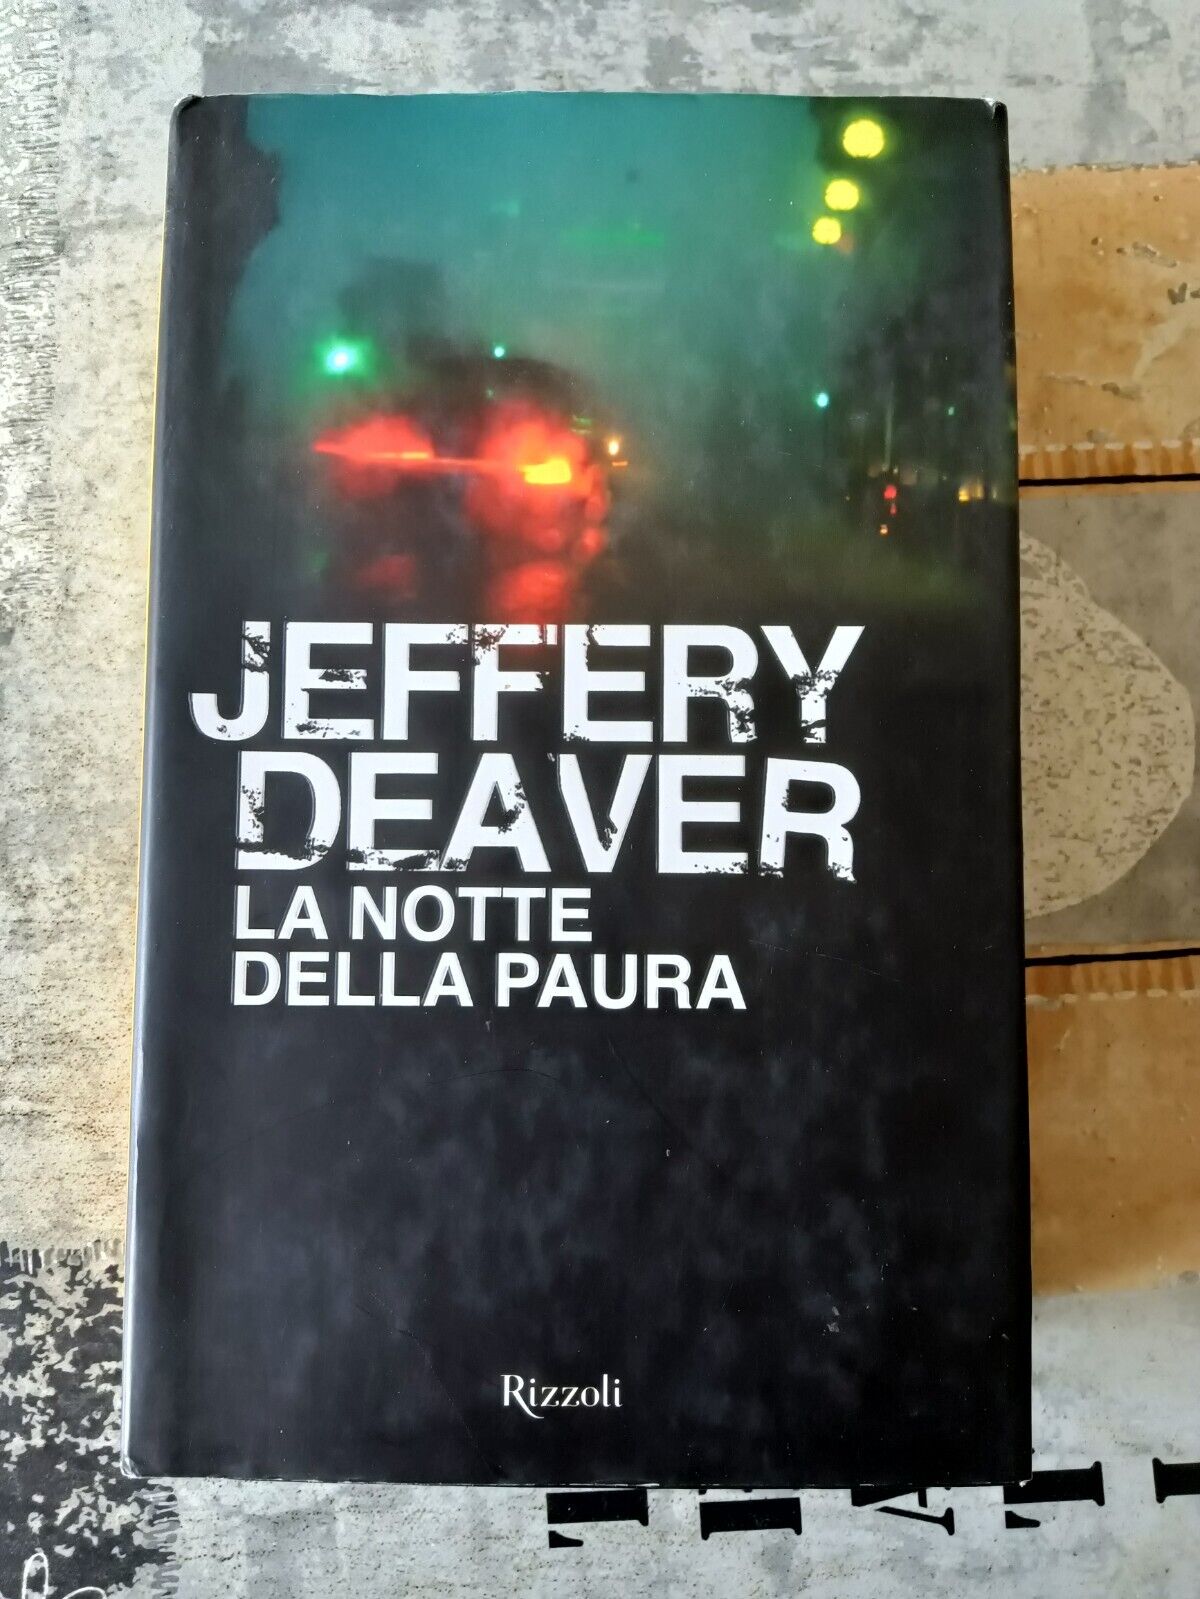 La notte della paura | Jeffrey Deaver - Rizzoli